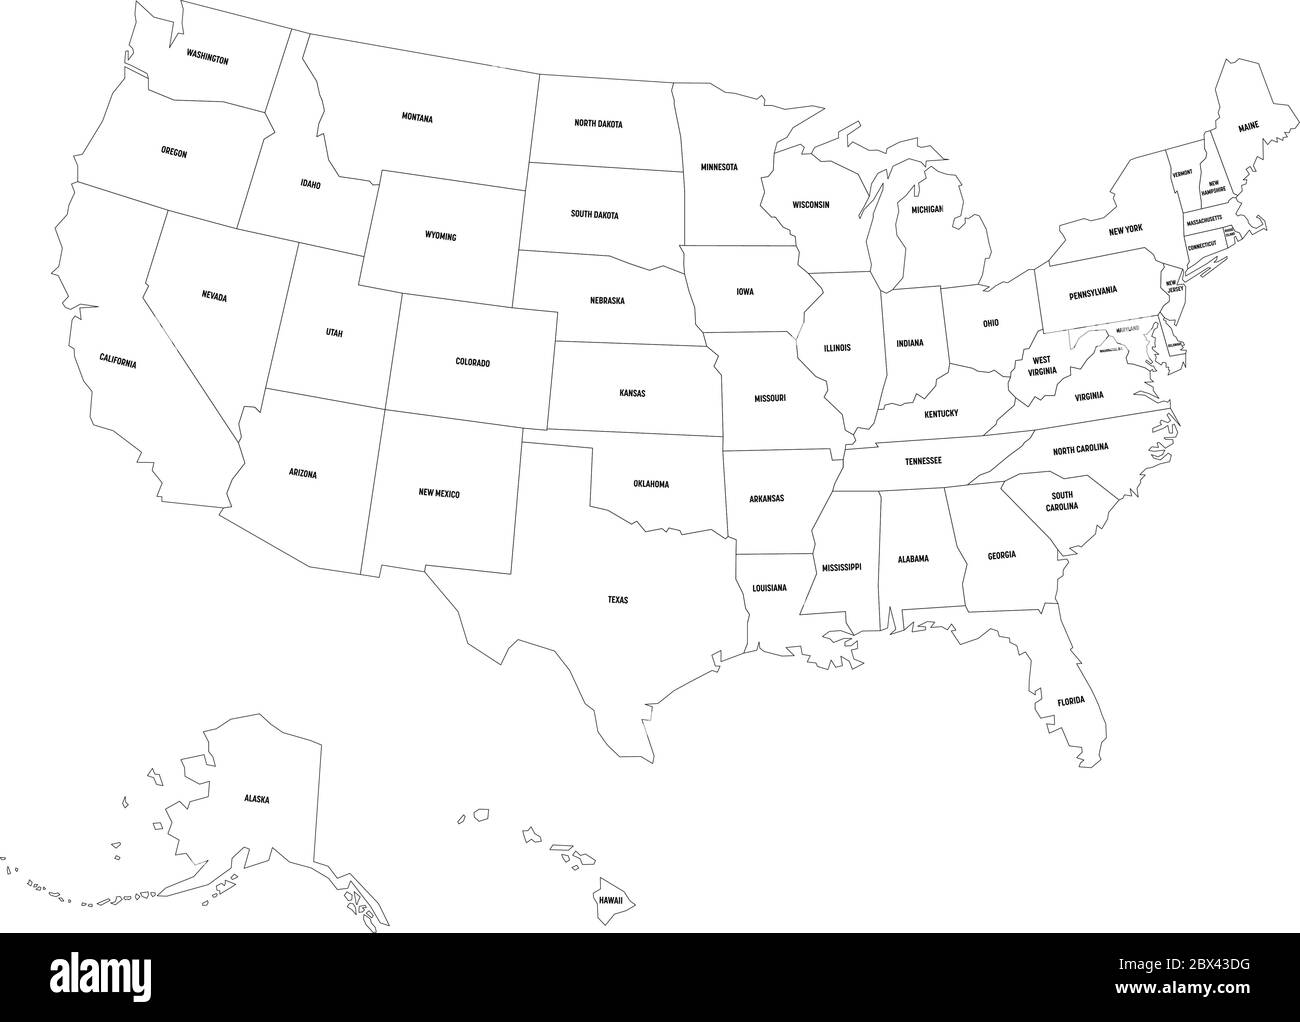 Bản đồ chính trị Hoa Kỳ. Mỹ đen đơn giản phẳng trên nền trắng sẽ giúp bạn hiểu rõ hơn về bản chất của đất nước chúng ta. Hãy tìm hiểu thêm về cấu trúc chính trị và vị trí của các bang và thành phố trong đất nước nhé!